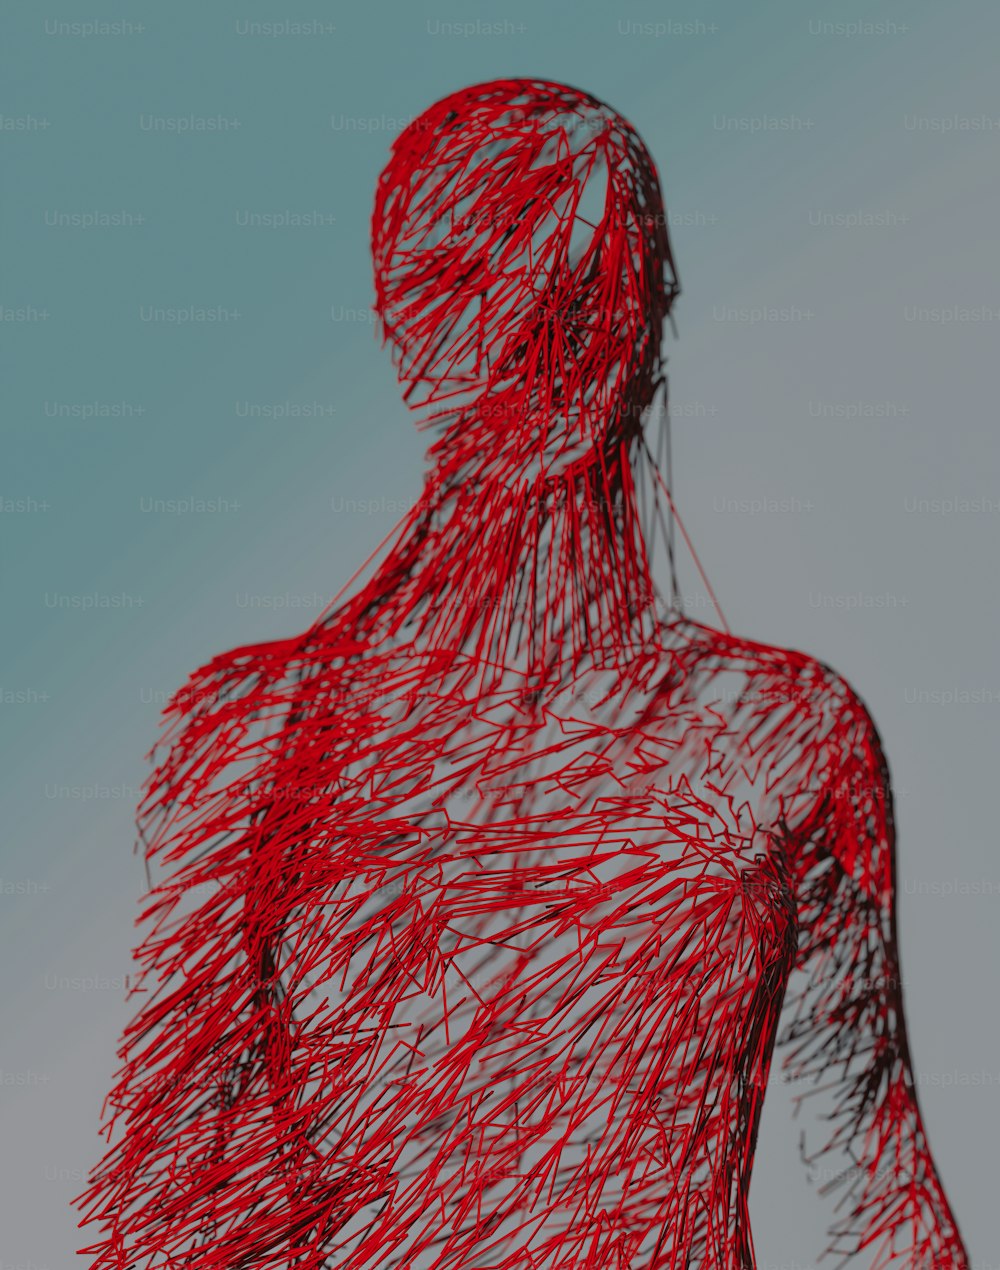 Un disegno di una persona con i capelli rossi